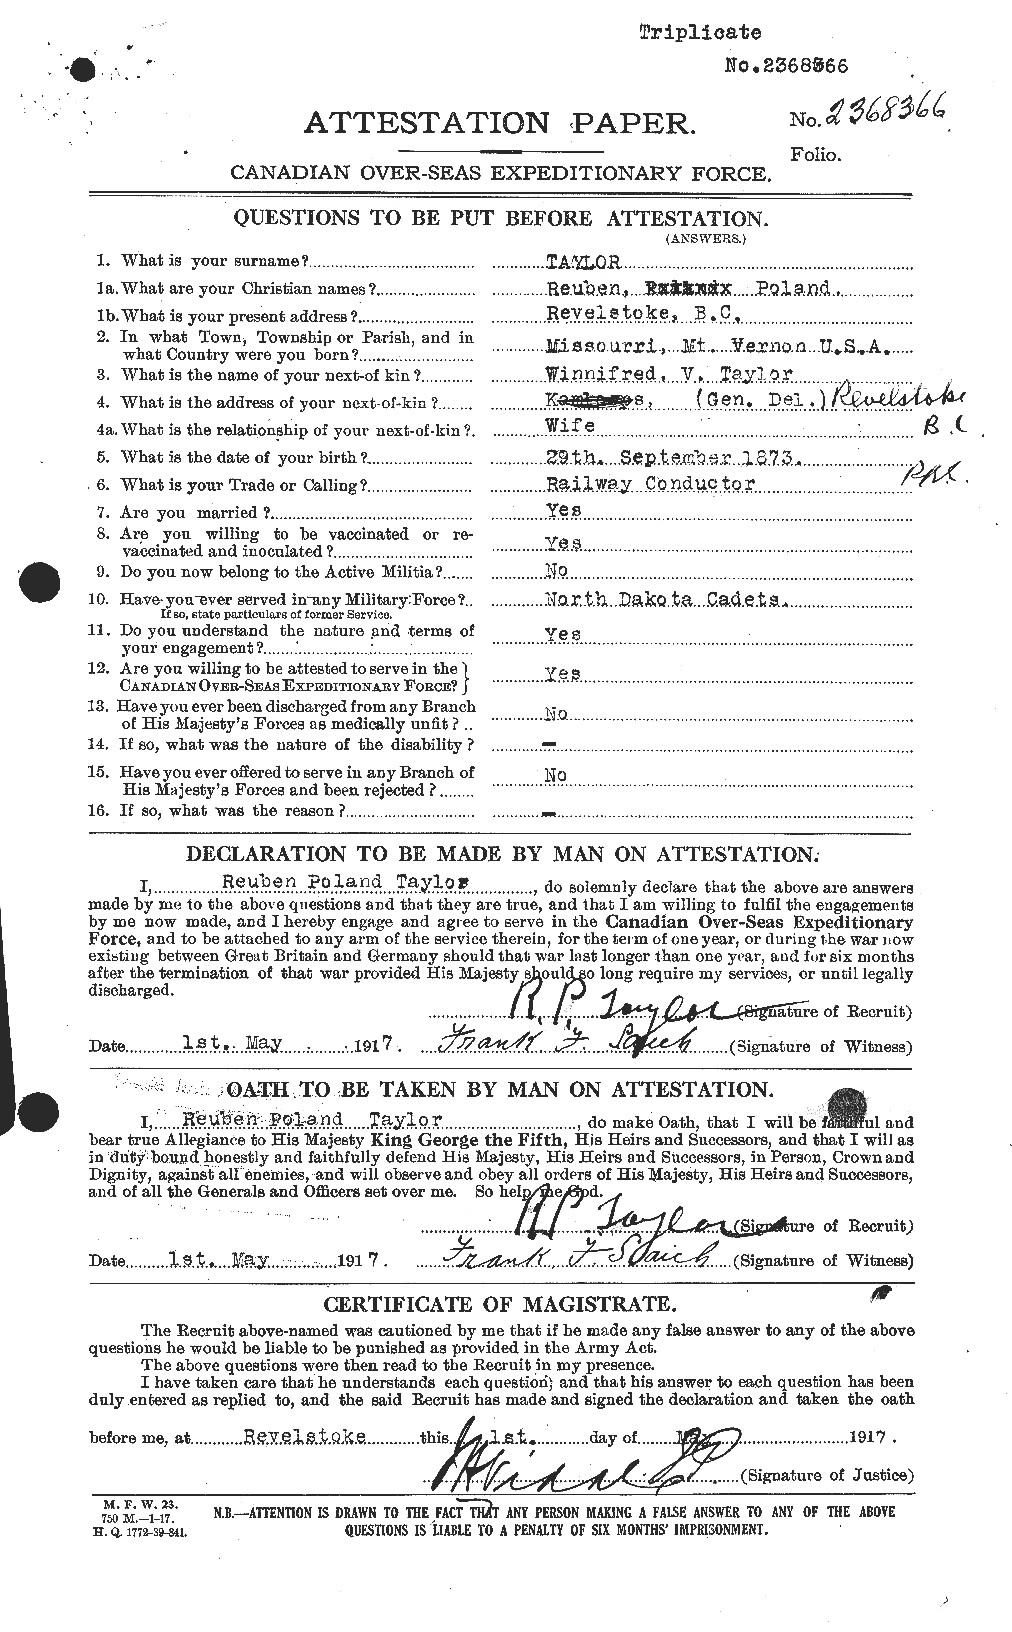 Dossiers du Personnel de la Première Guerre mondiale - CEC 627811a